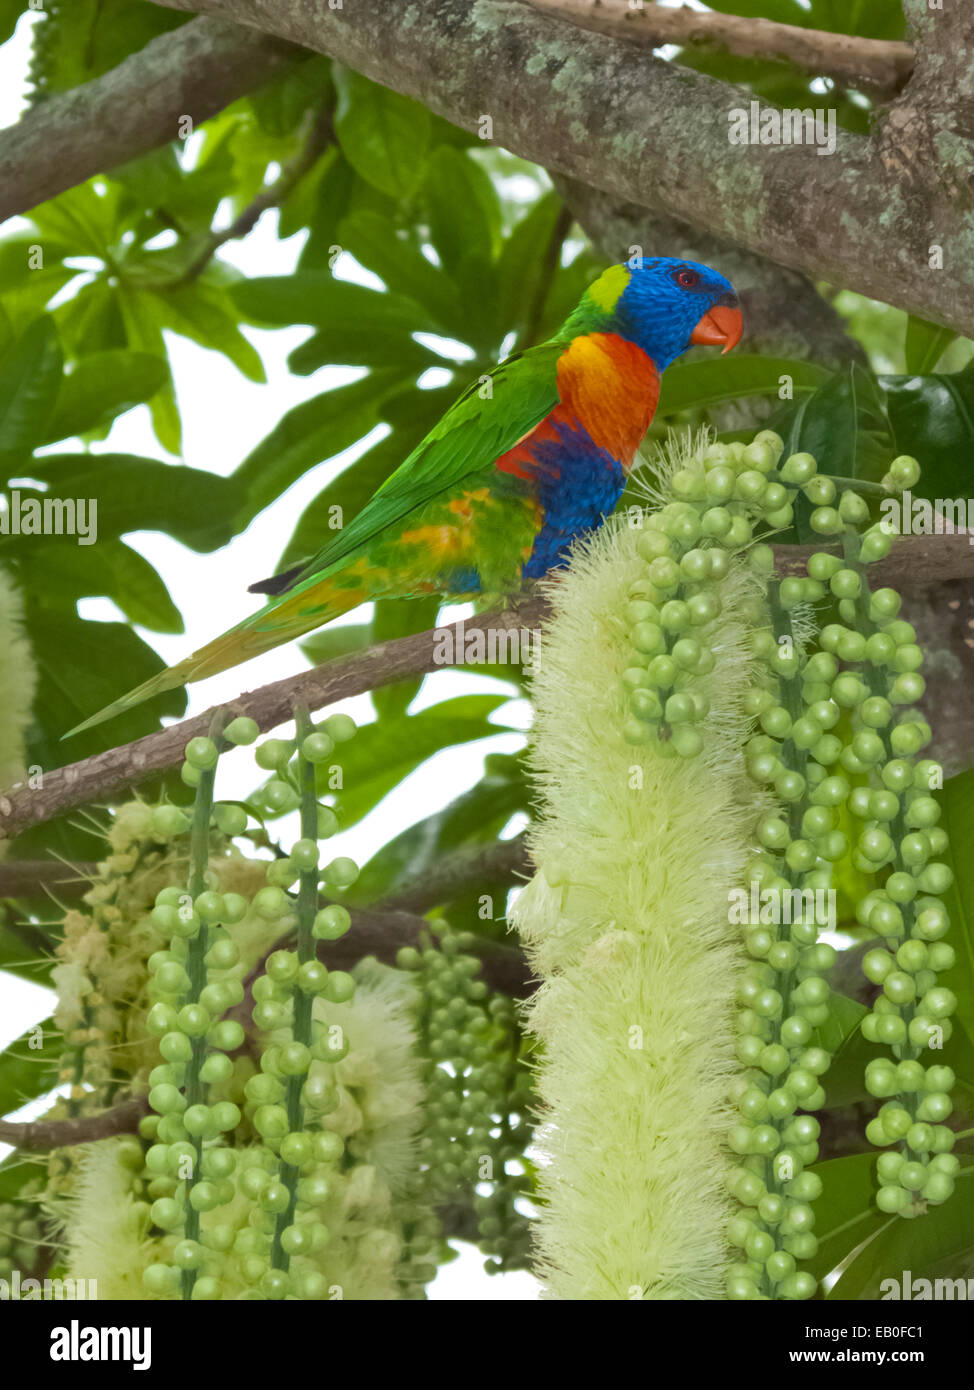 Rainbow Lorikeet Parrot in Kapok Tree Cairns Australia Stock Photo